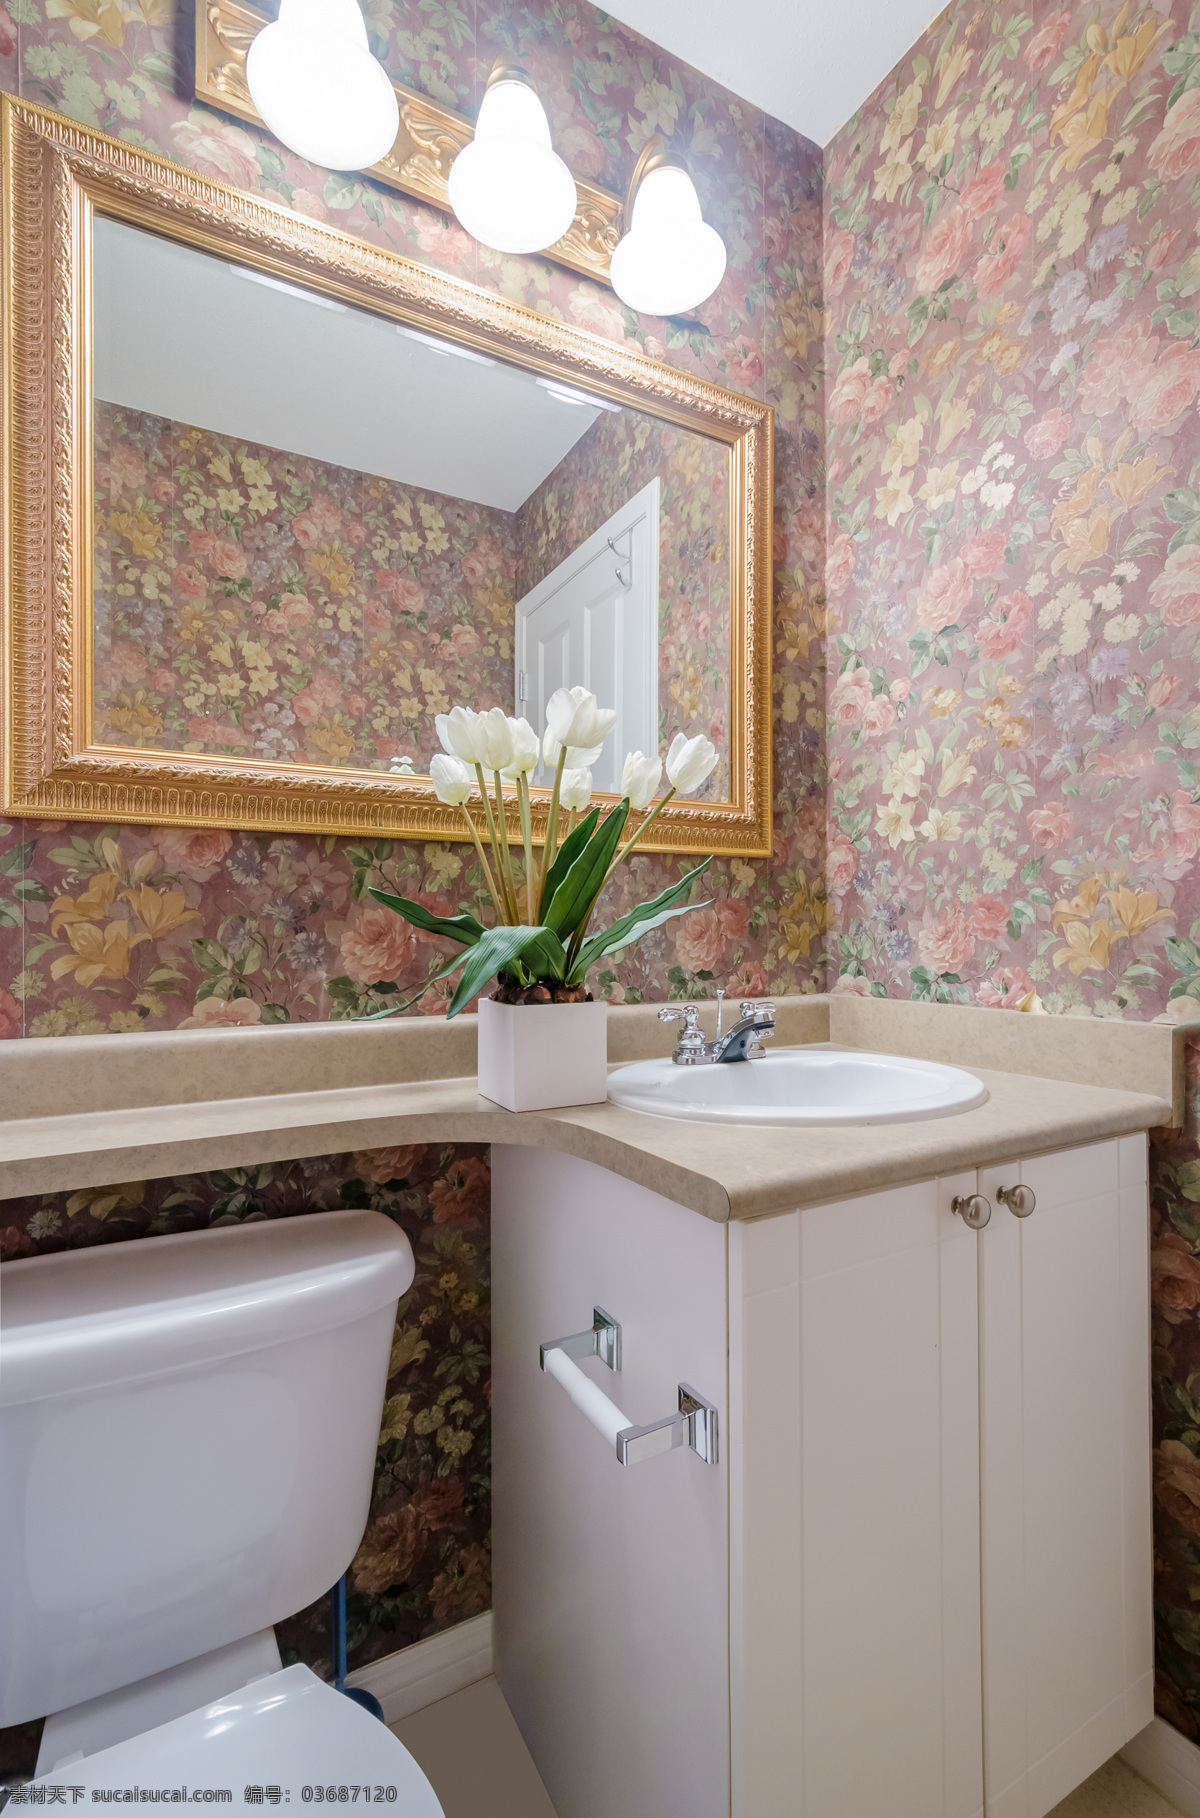 欧式 复古 卫生间 设计图 洗手间 效果图 装修图 室内设计 环境家居